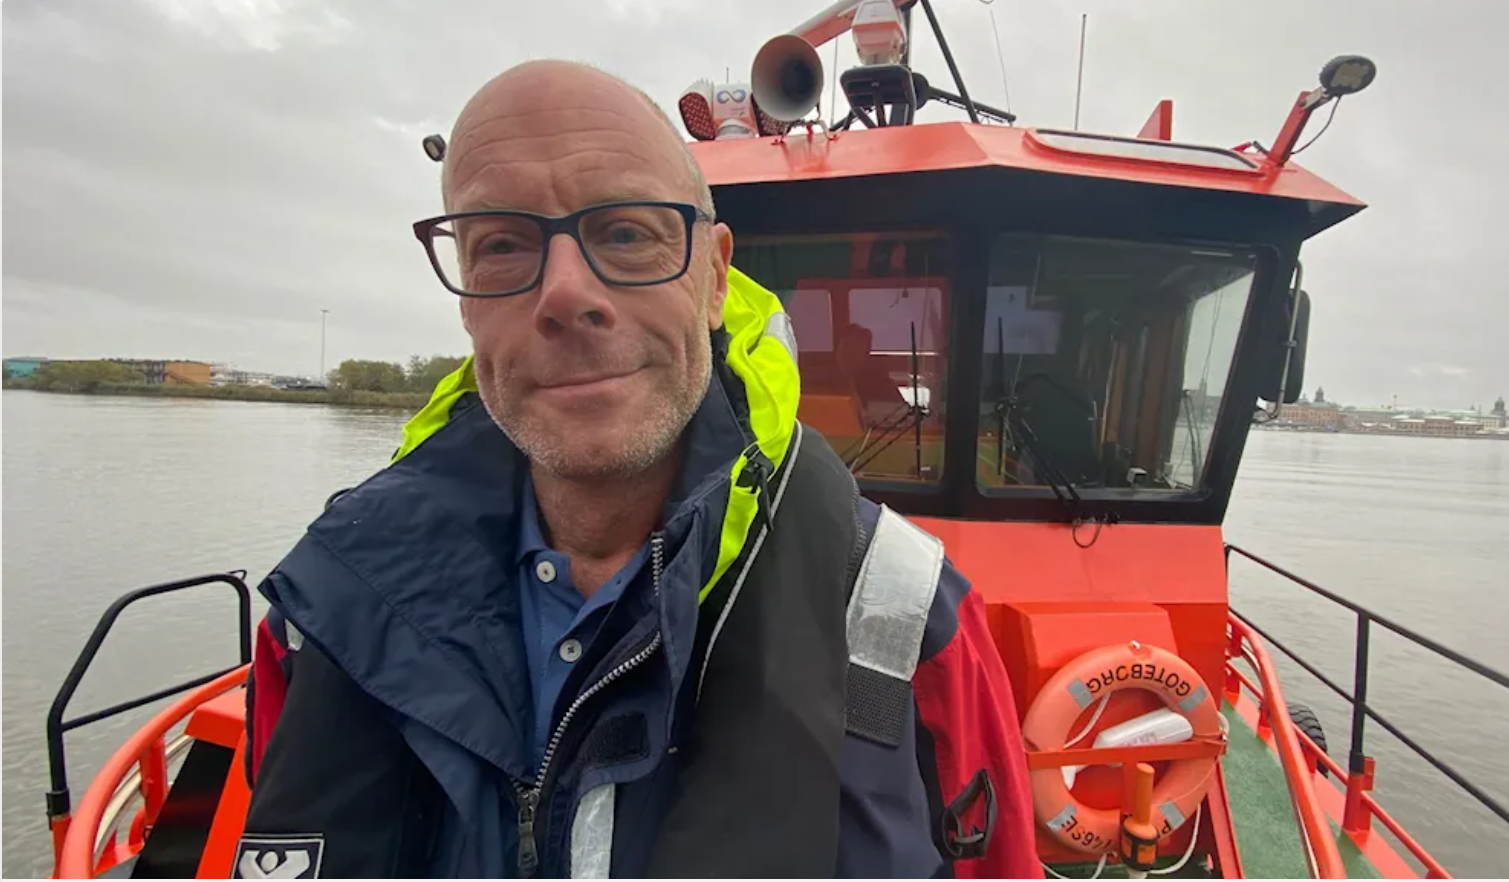 Lotsen Patrik Wikand i arbetskläder på en båt